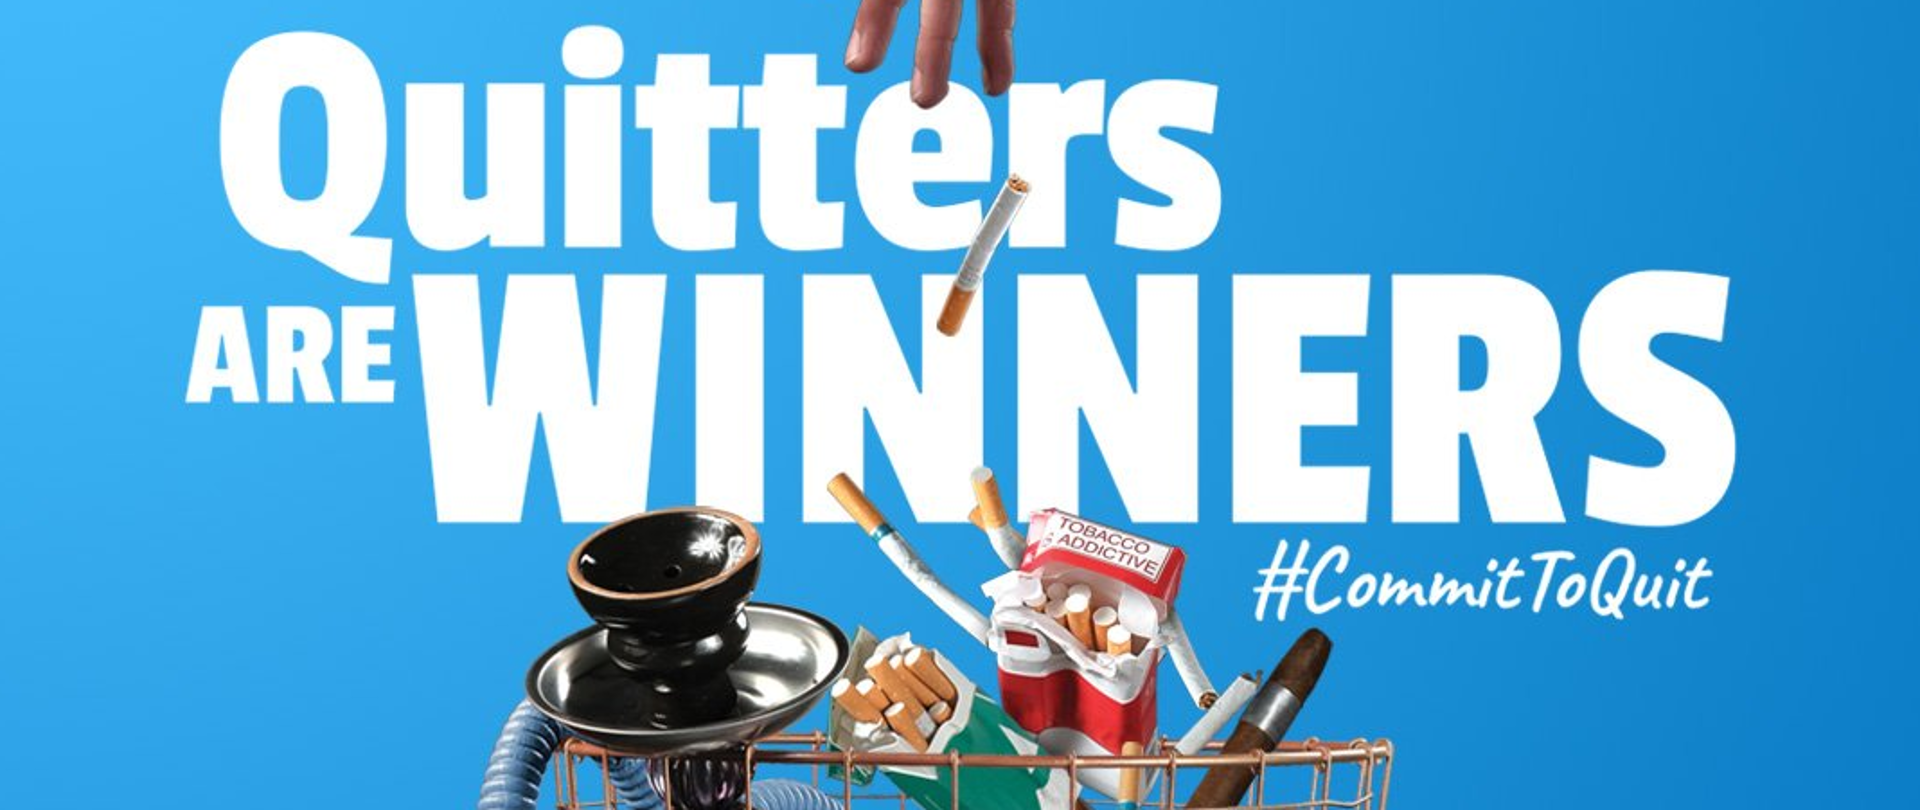 ręka wrzucająca do śmietnika: papierosy, e-papierosy, fajkę wodną, cygaro. Napis "Quitters are winners:. #Commit to Quit" 